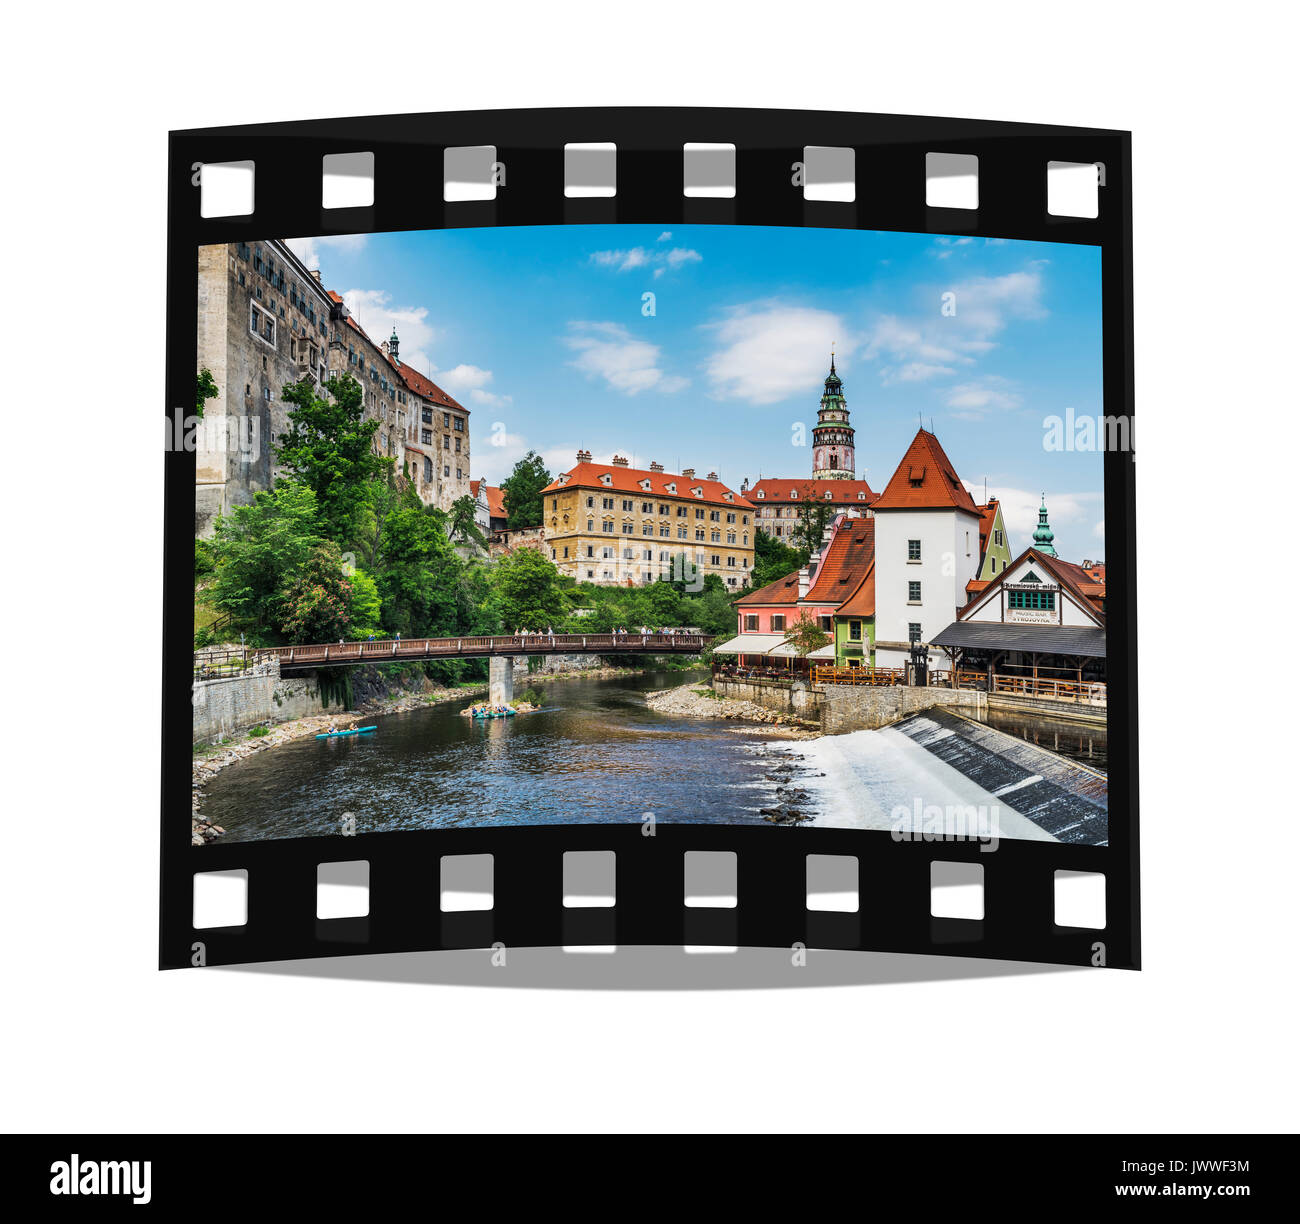 Blick auf die Altstadt von Chesky Krumlov, das Schloss Chesky Krumlov und die Moldau in Böhmen, Jihocesky Kraj, Tschechische Republik, Europa Stockfoto